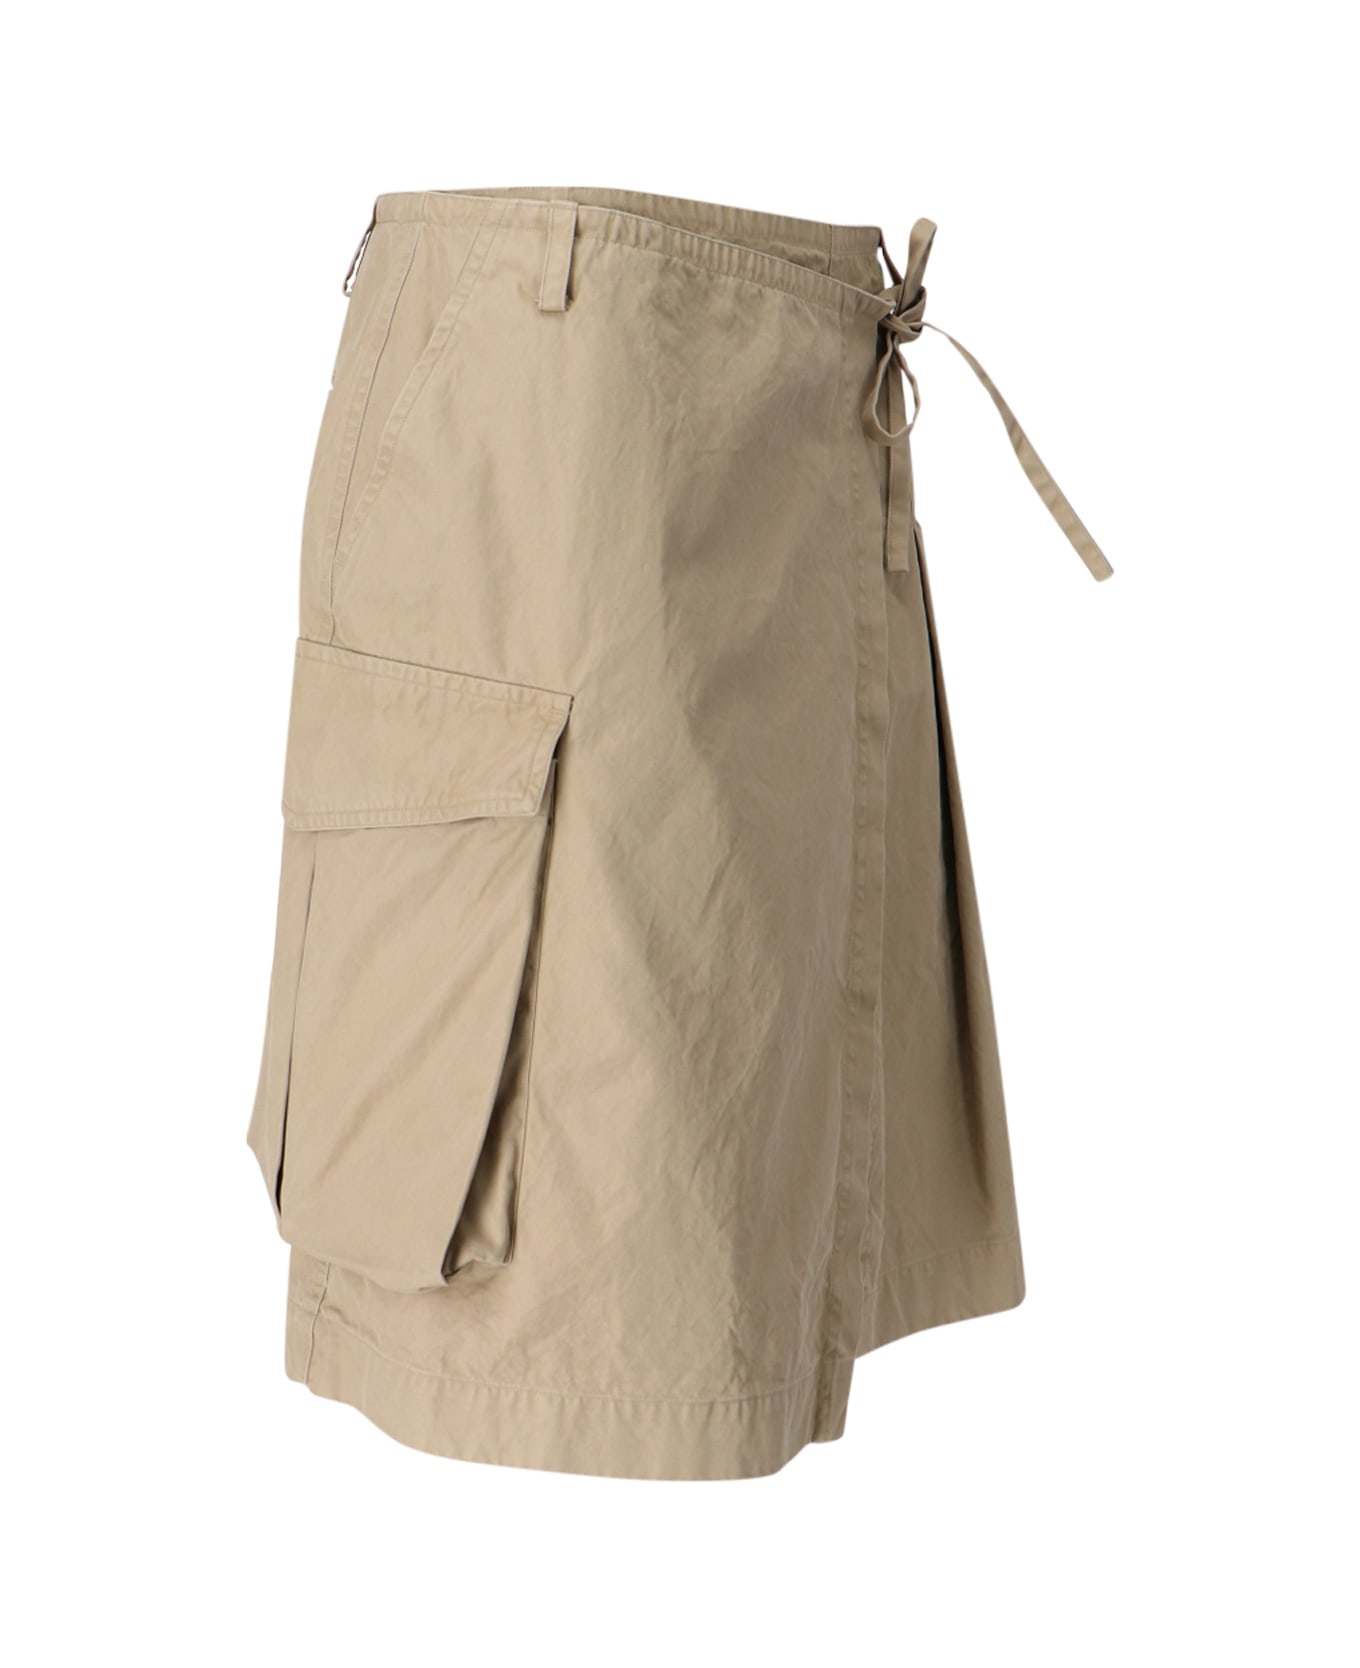 Dries Van Noten Kilt Design Skirt - Beige スカート